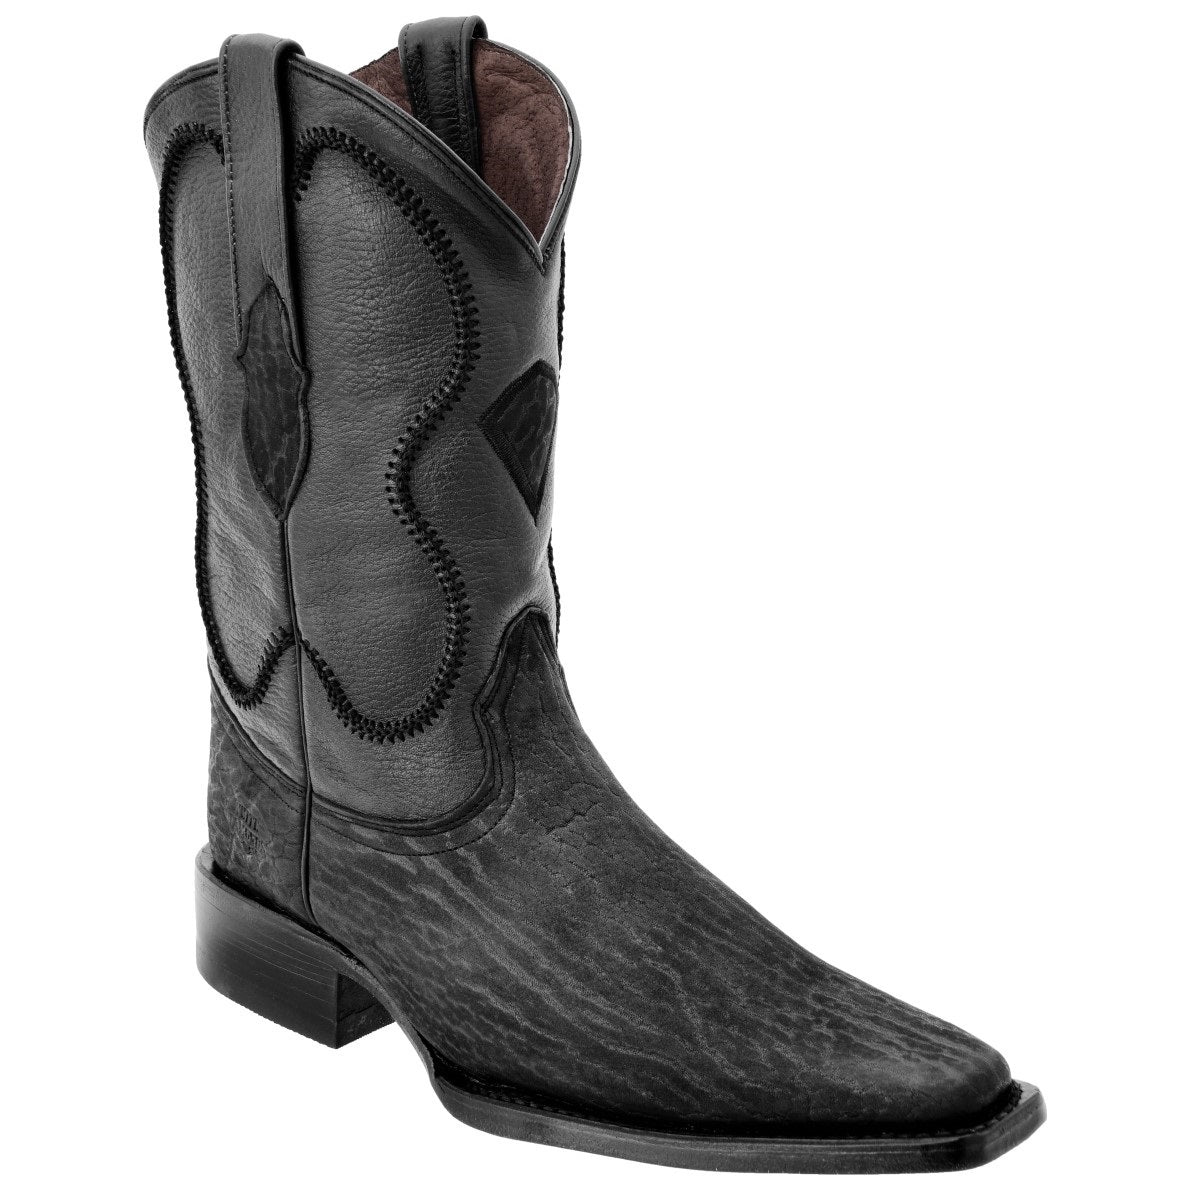 Botas Vaqueras TM-WD0189 - Western Boots